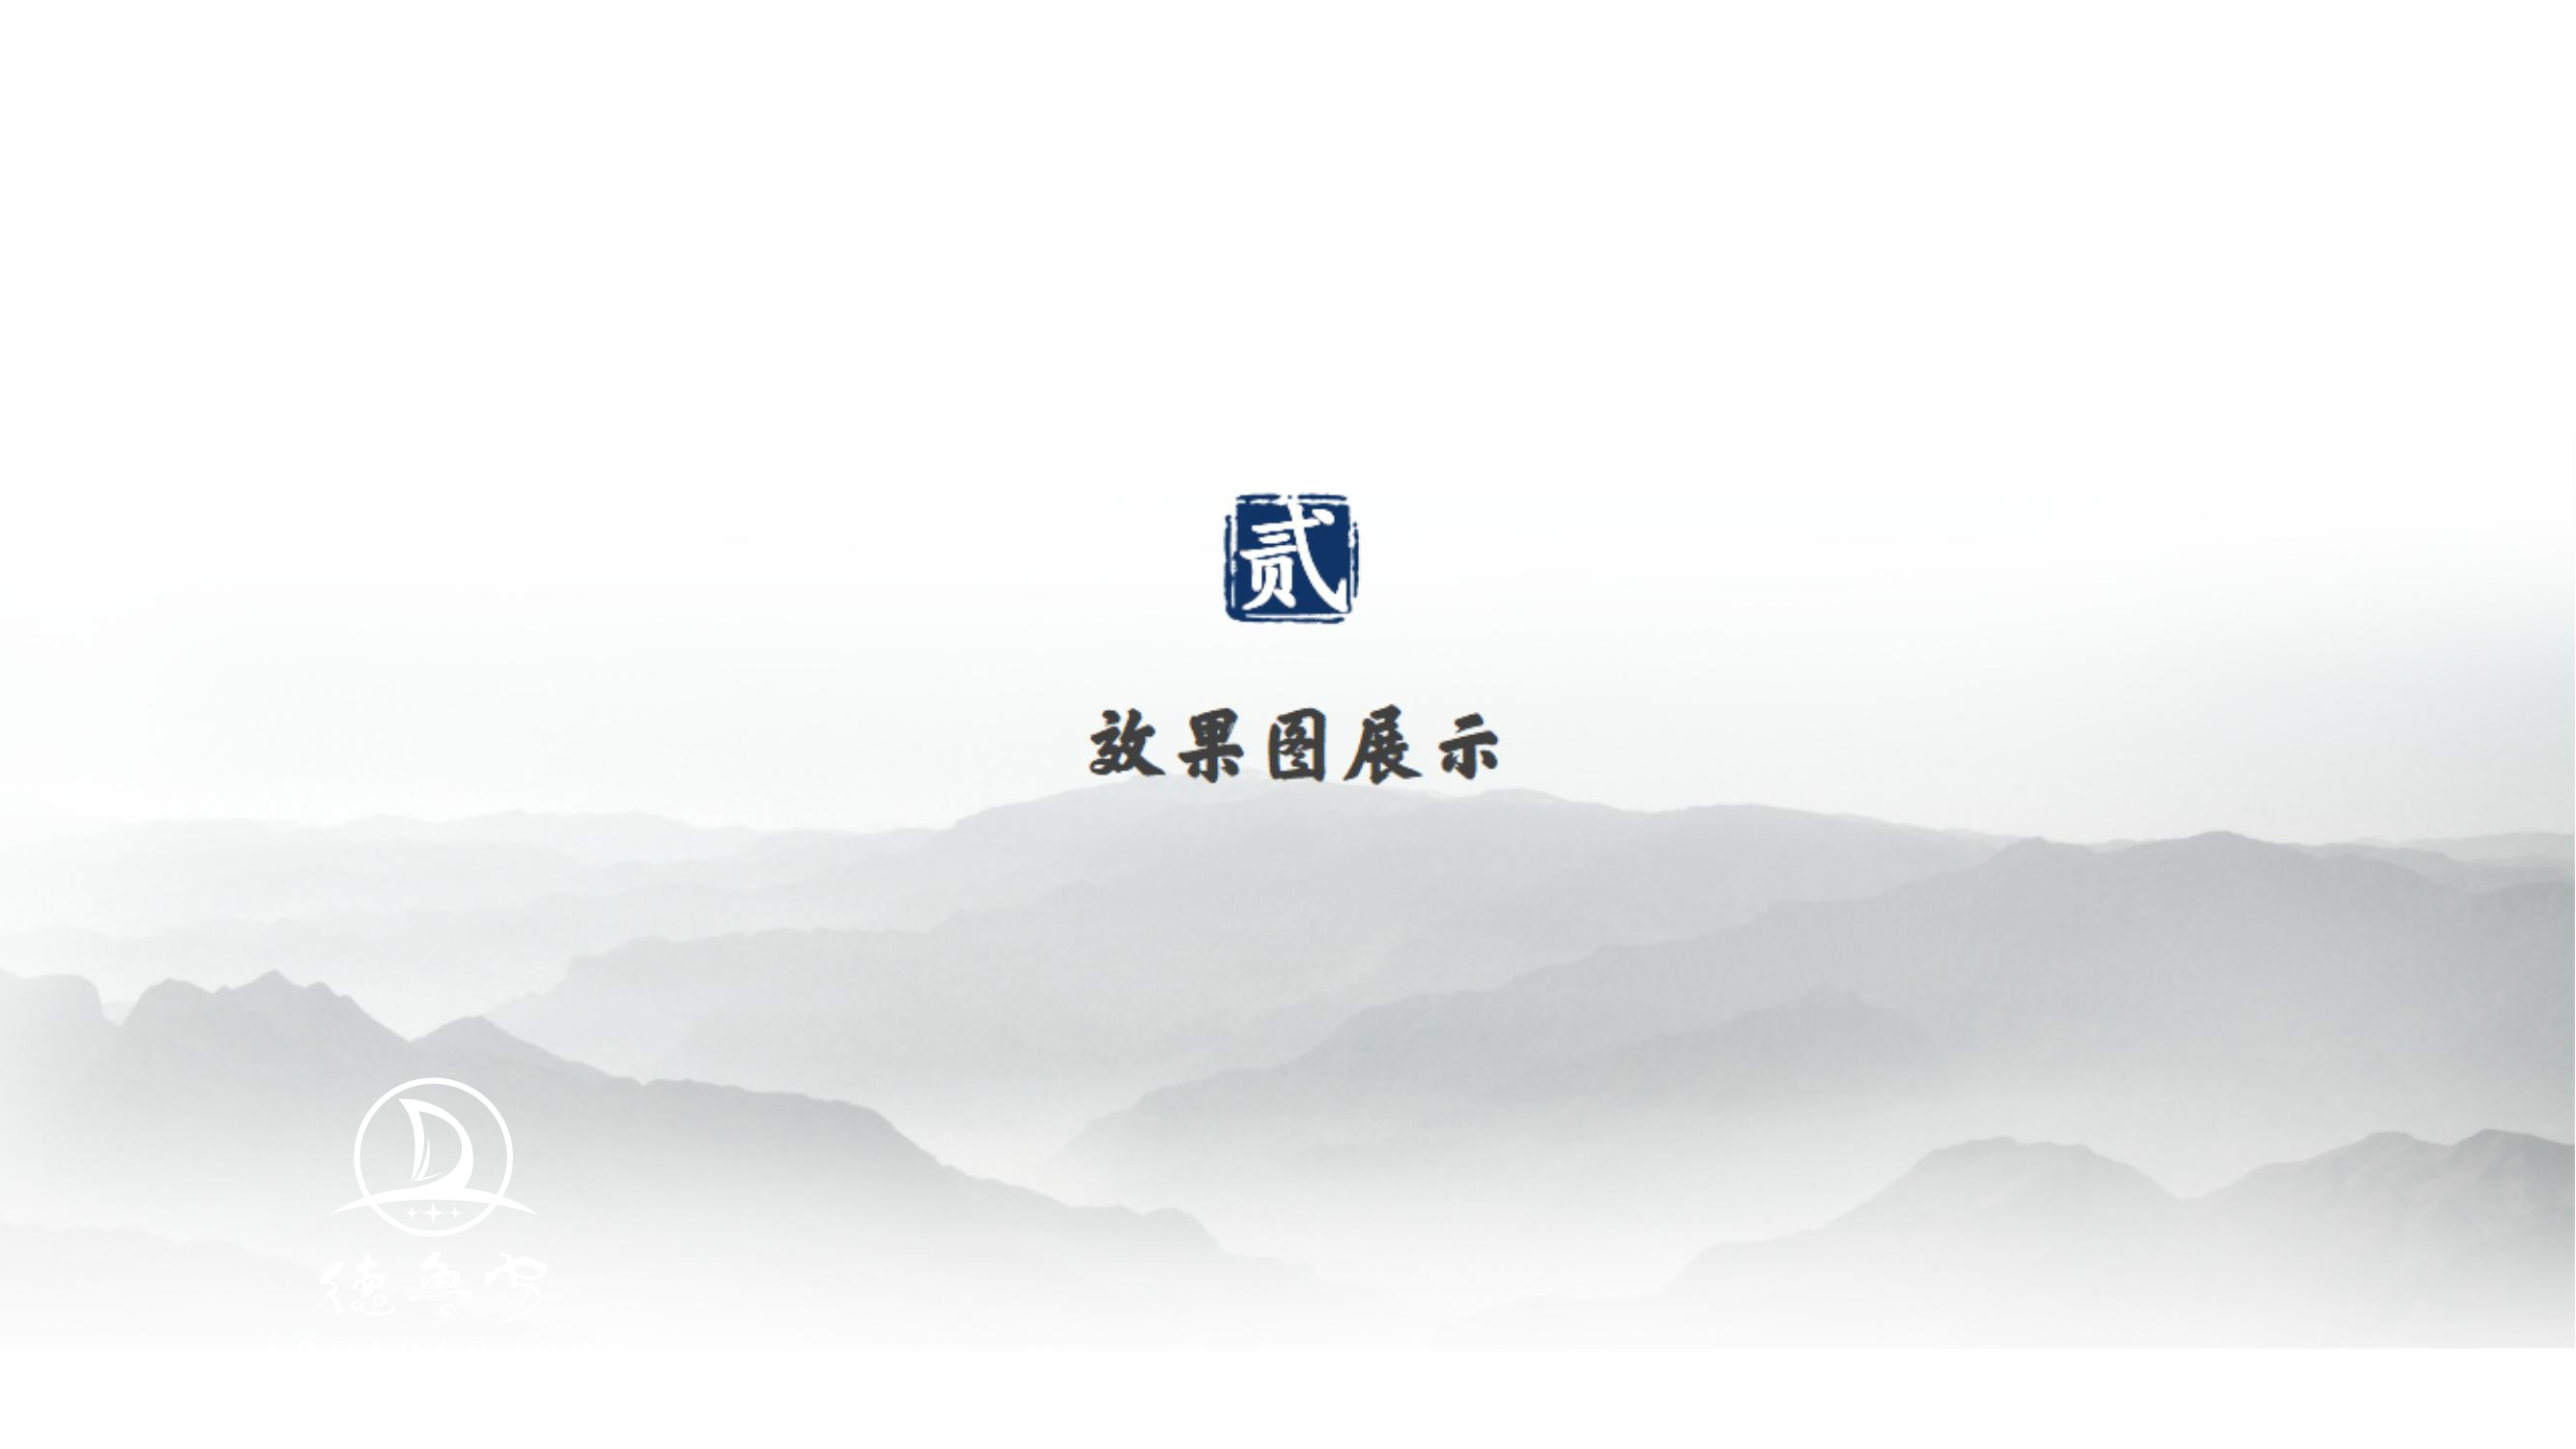 玉皇宫 logo定稿方案_04.jpg